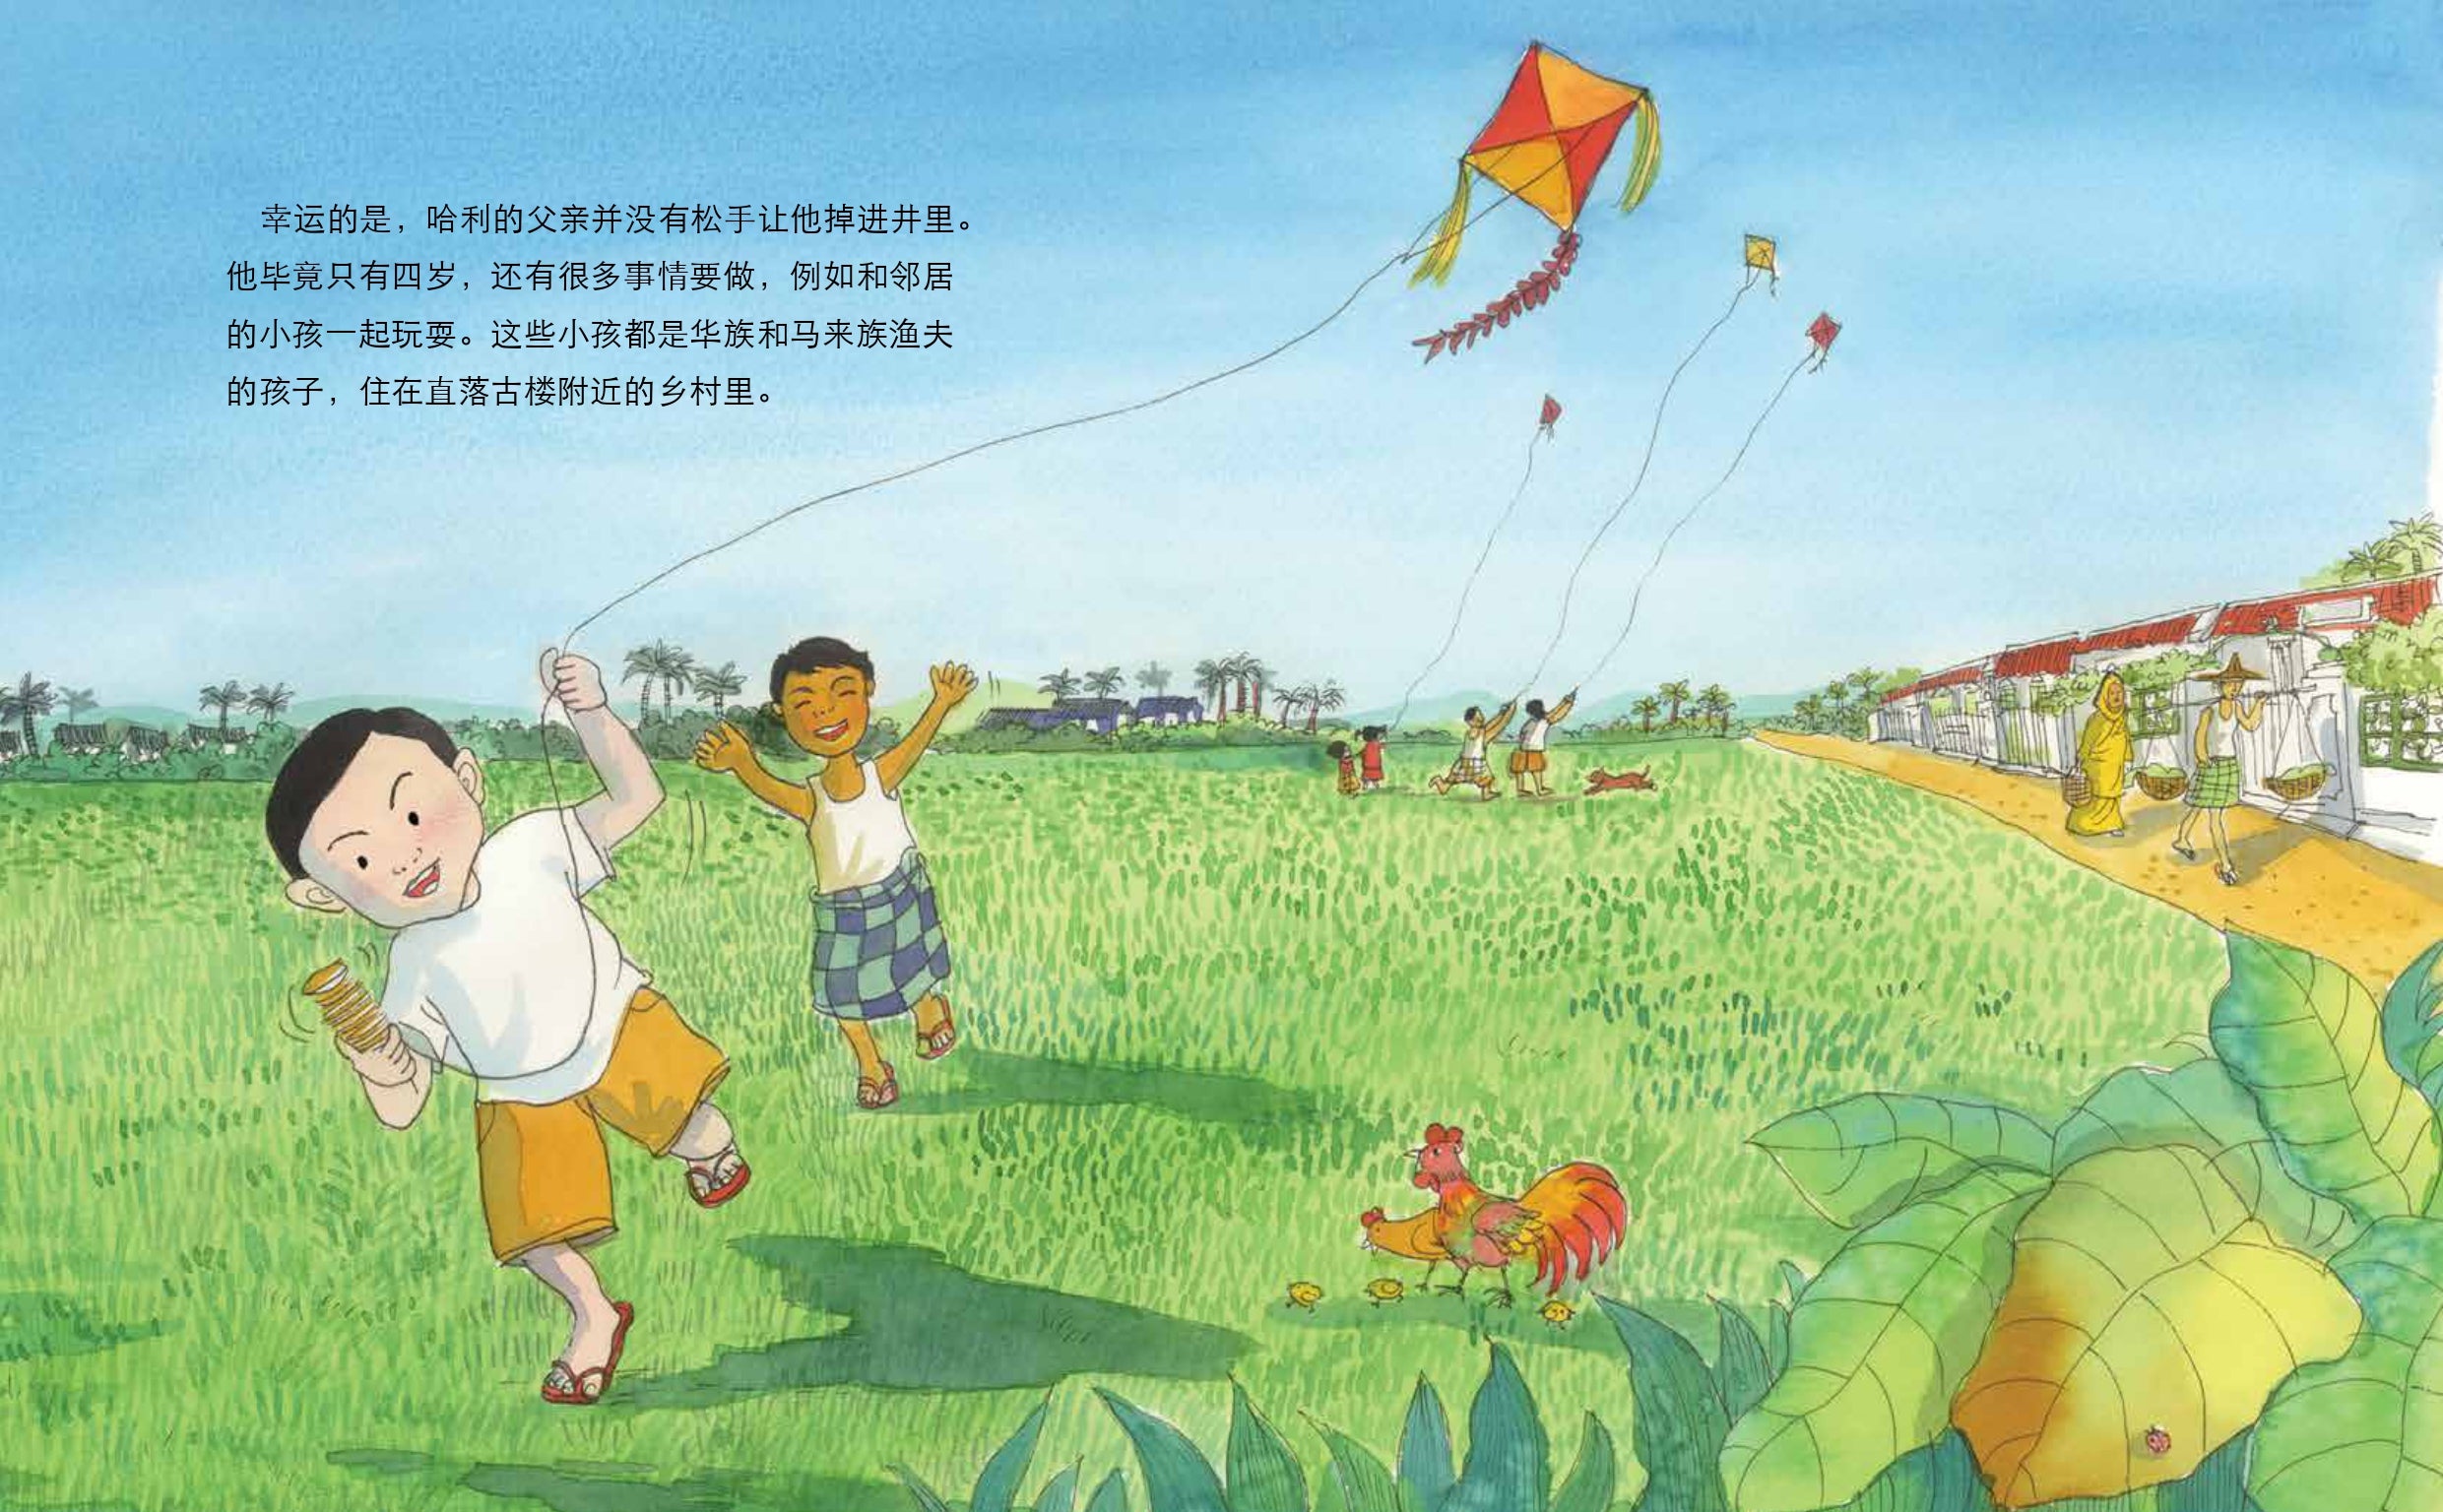 《小孩哈利 : 李光耀的童年时代》 第一册